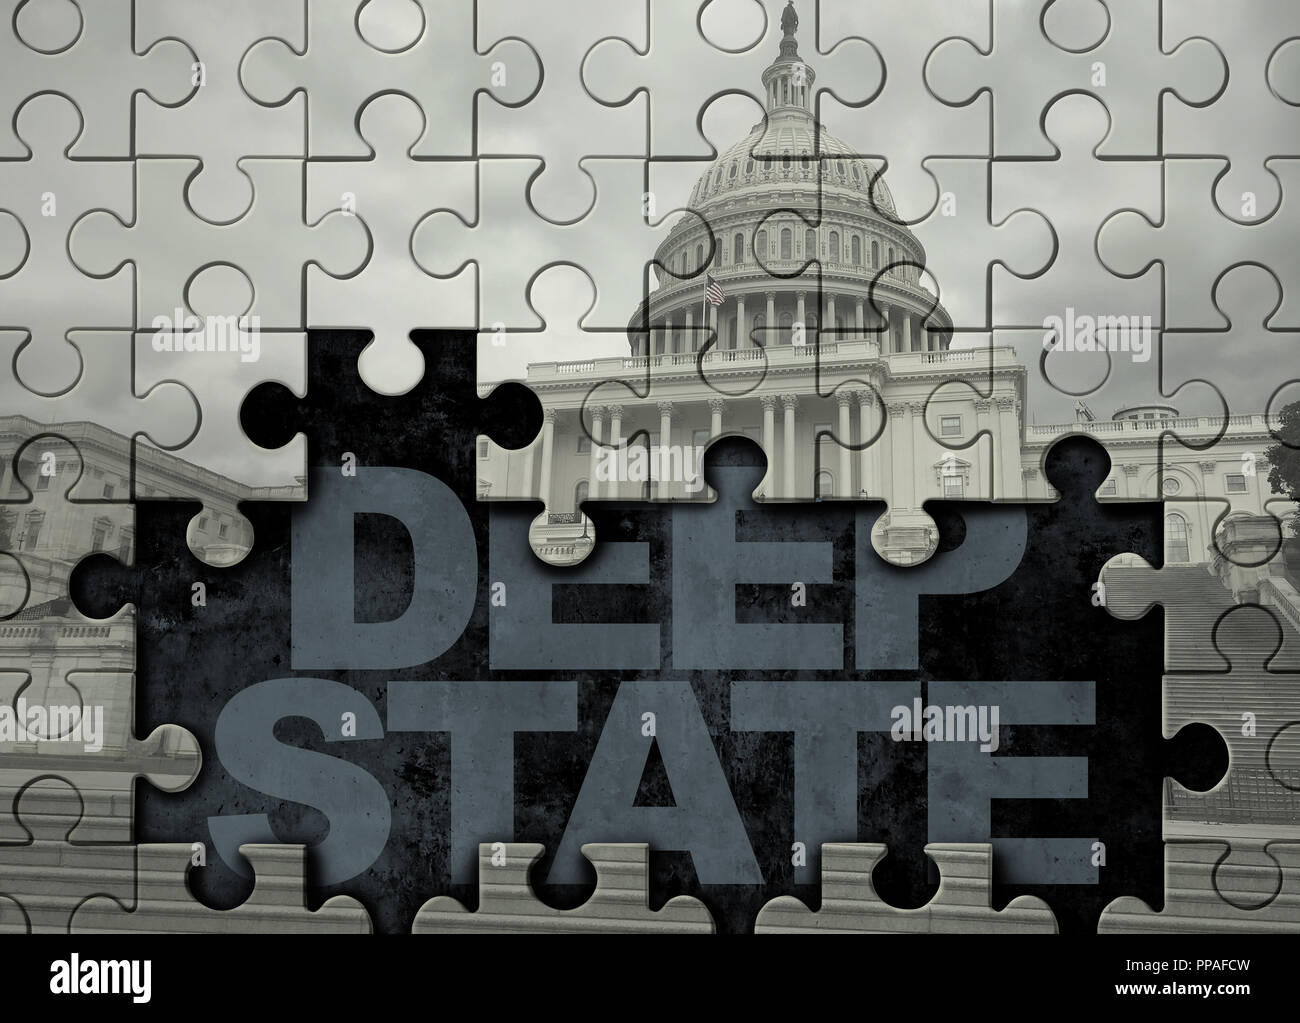 Estado profundo concepto la política norteamericana y Estados Unidos símbolo político de una burocracia gubernamental subterránea secreta ilustración 3D con estilo. Foto de stock